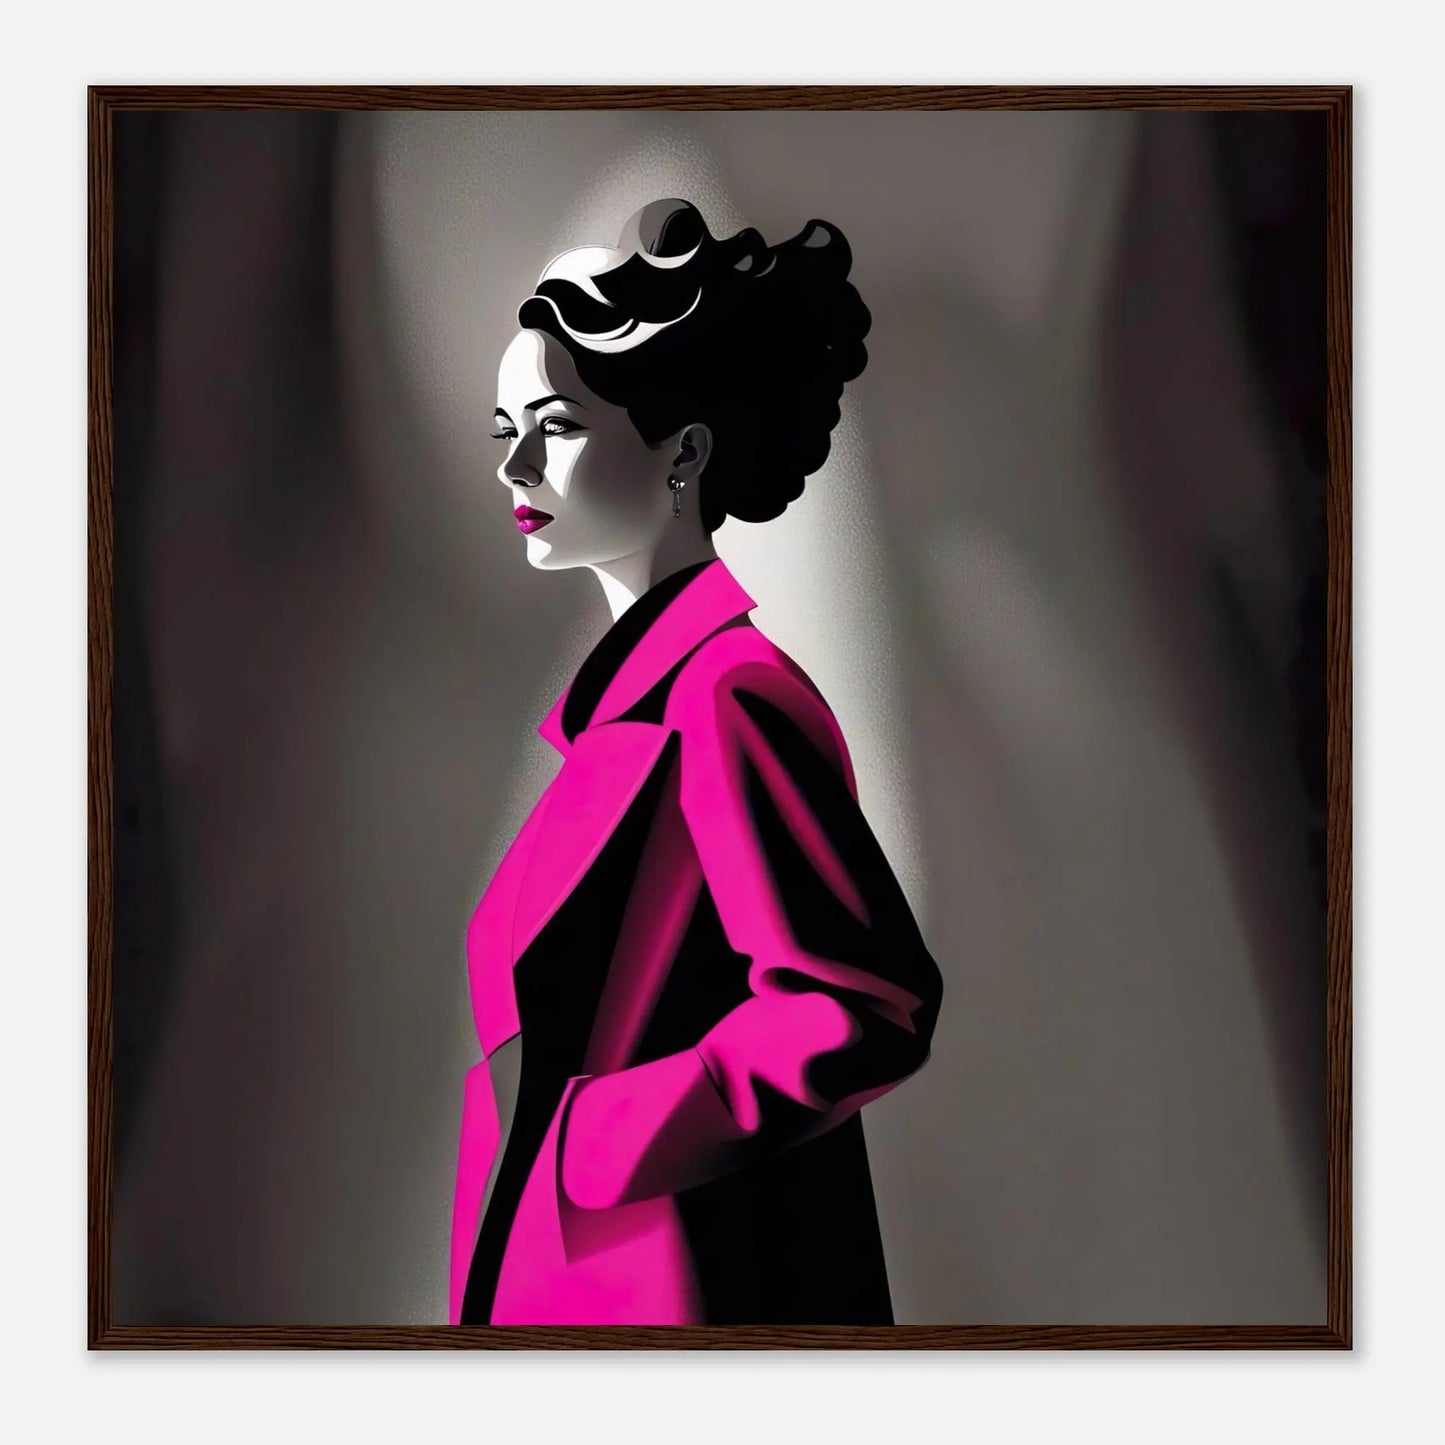 Gerahmtes Premium-Poster - Frau im rosa Mantel - Schwarz-Weiß, KI-Kunst - RolConArt, Schwarz-Weiß mit Akzentfarben, 70x70-cm-28x28-Dunkler-Holzrahmen